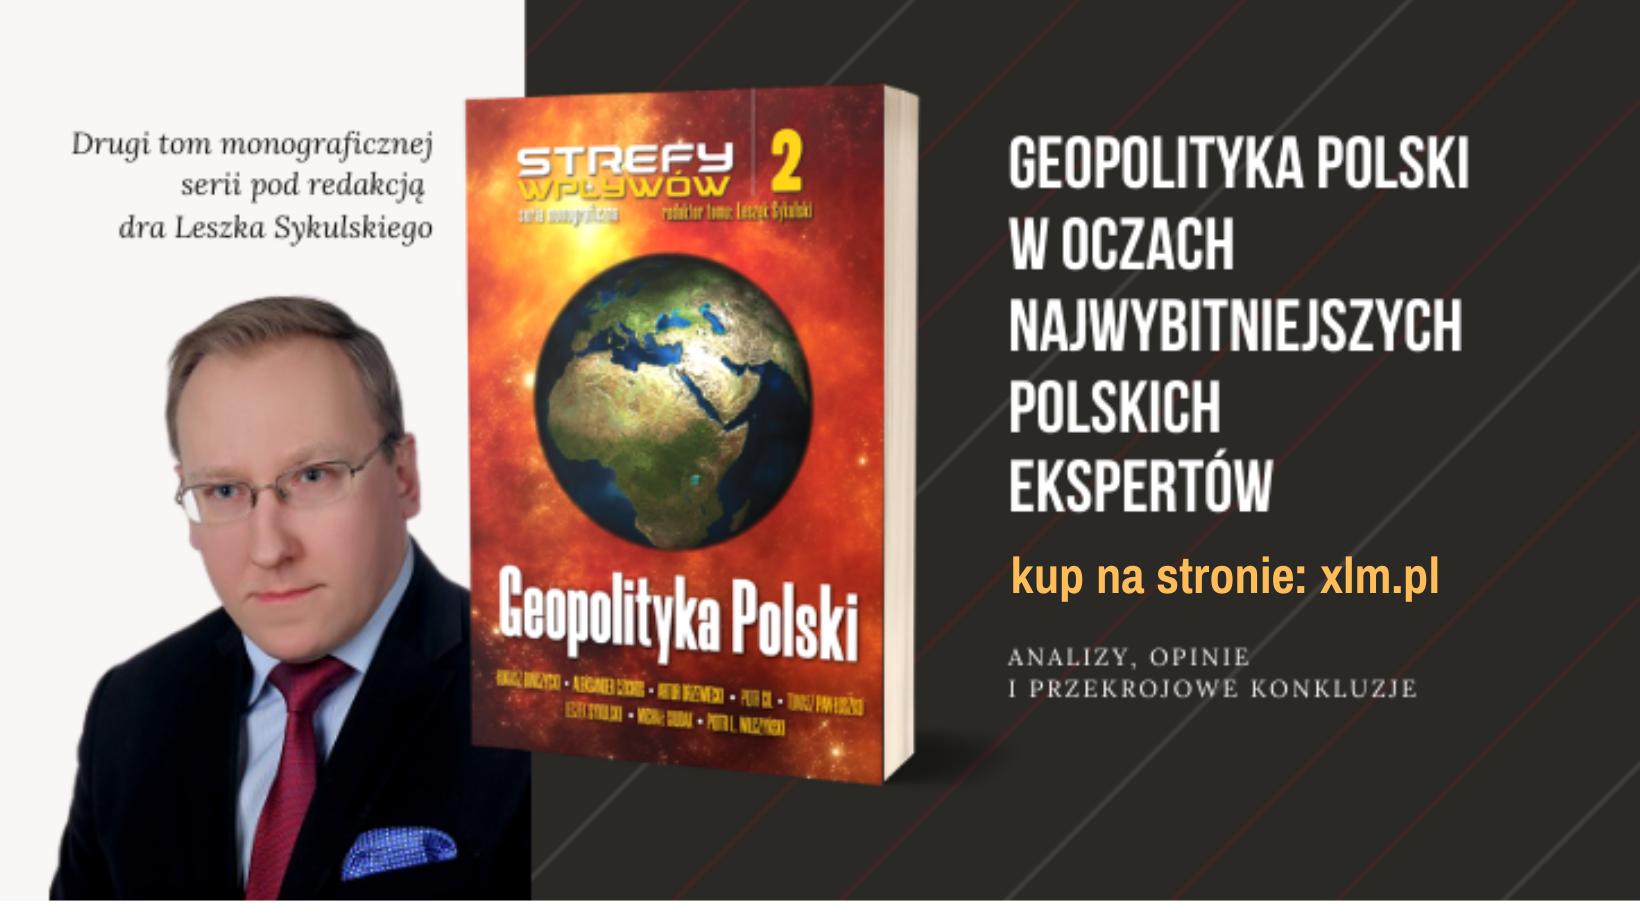 Geopolityka Polski – monografia pod red. naukową Leszka Sykulskiego